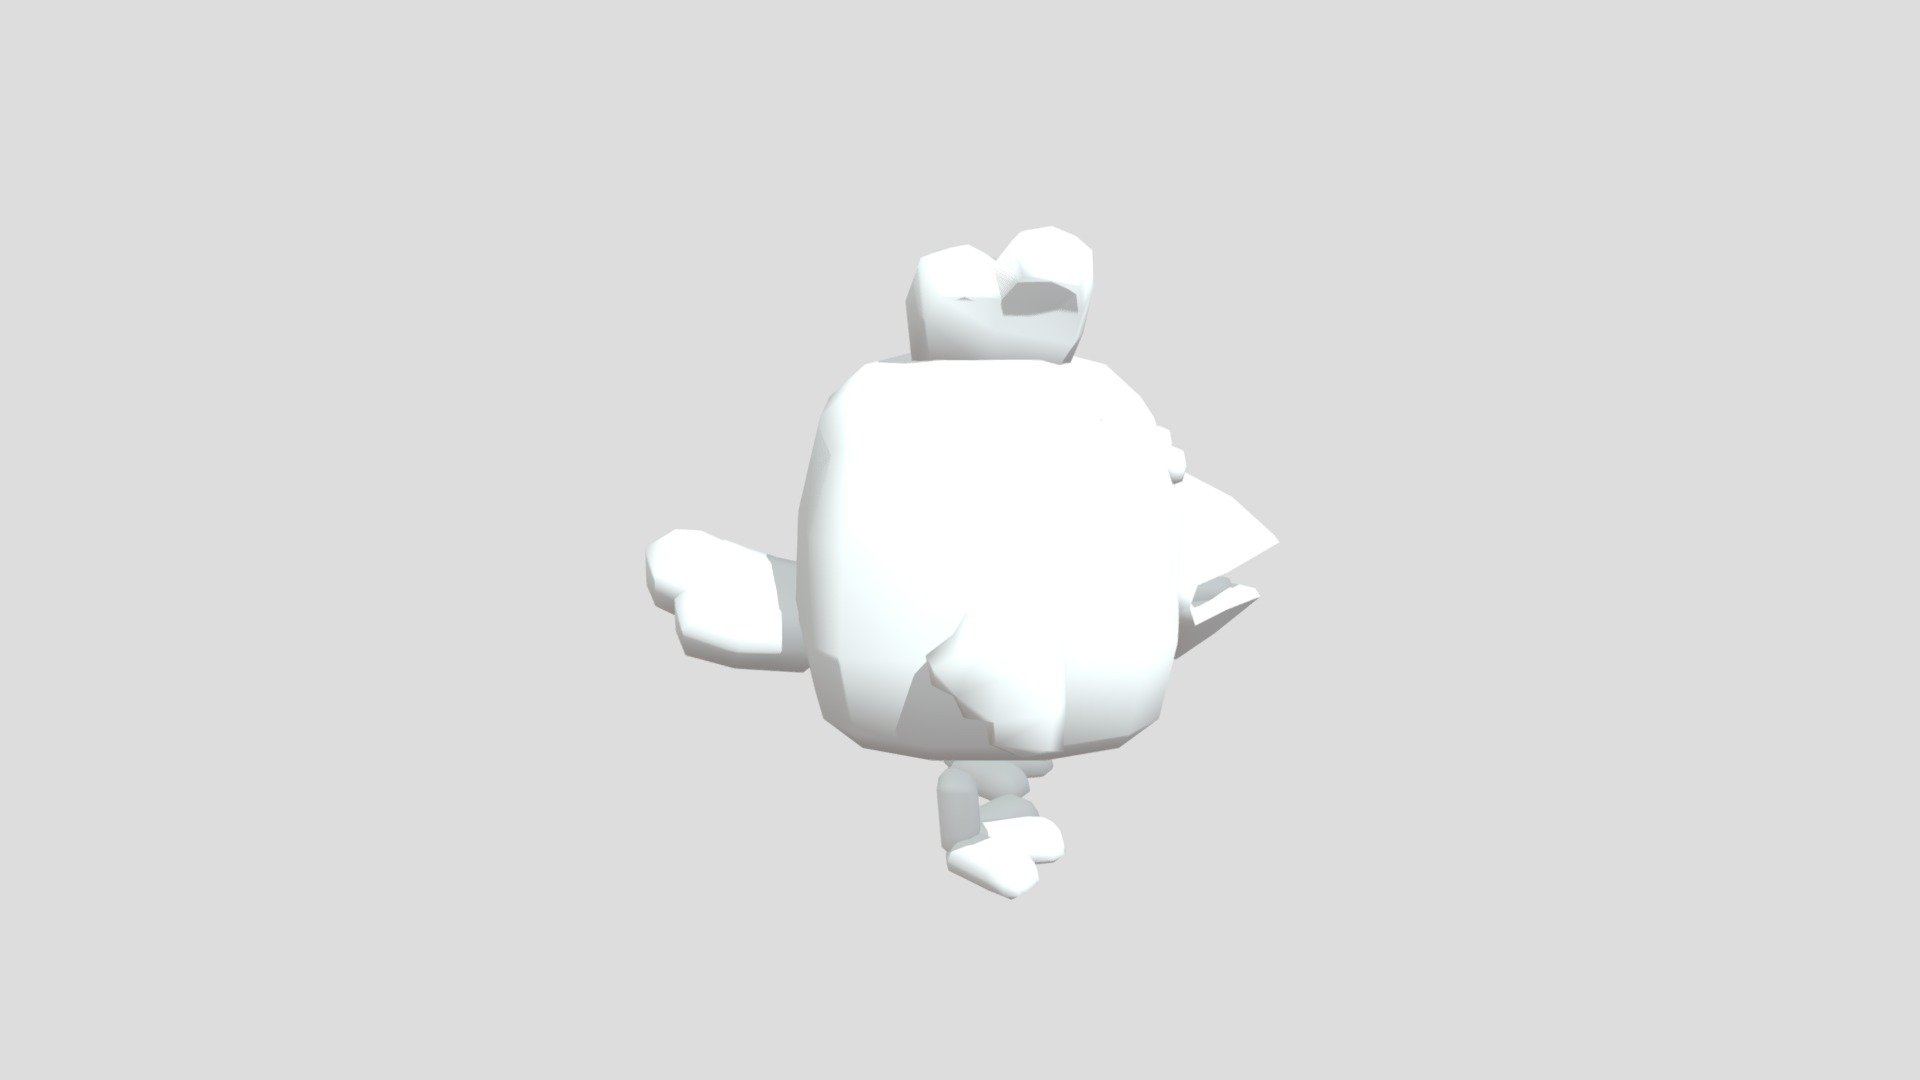 Chickengun 3D models - Sketchfab